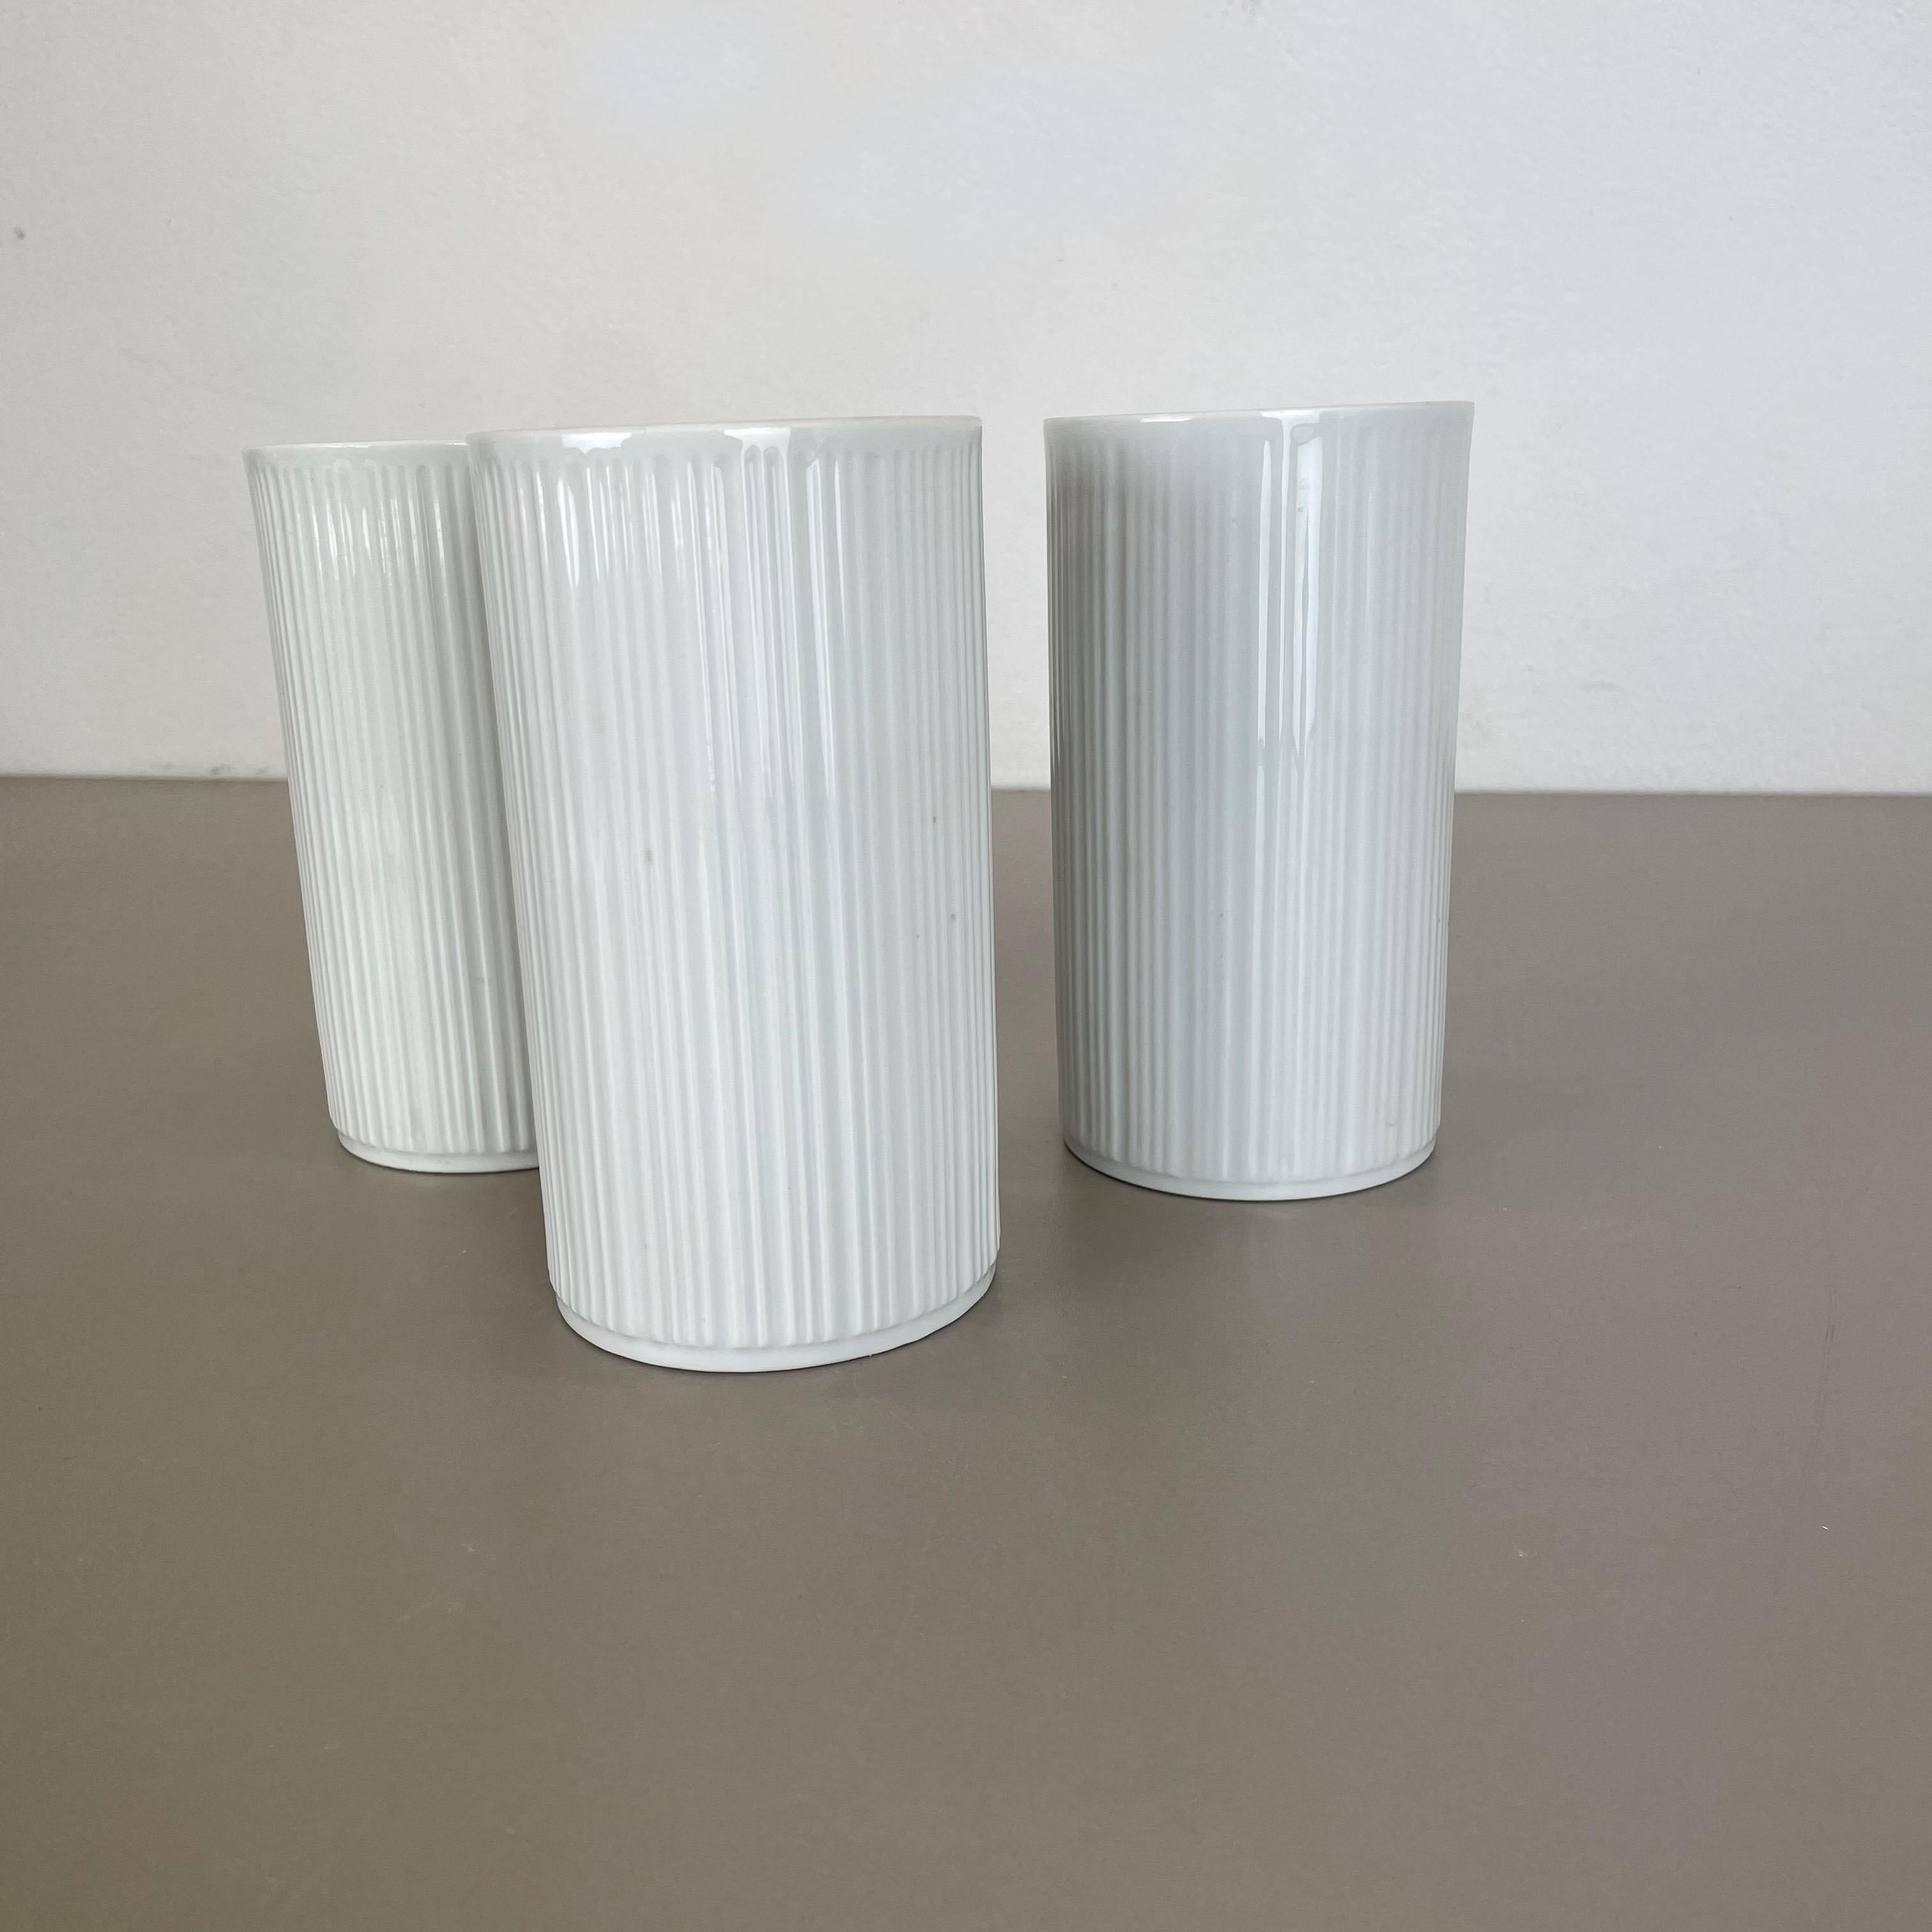 Set of 3 OP Art Porcelain Vases by Melitta Minden, Germany, 1970s For Sale 5